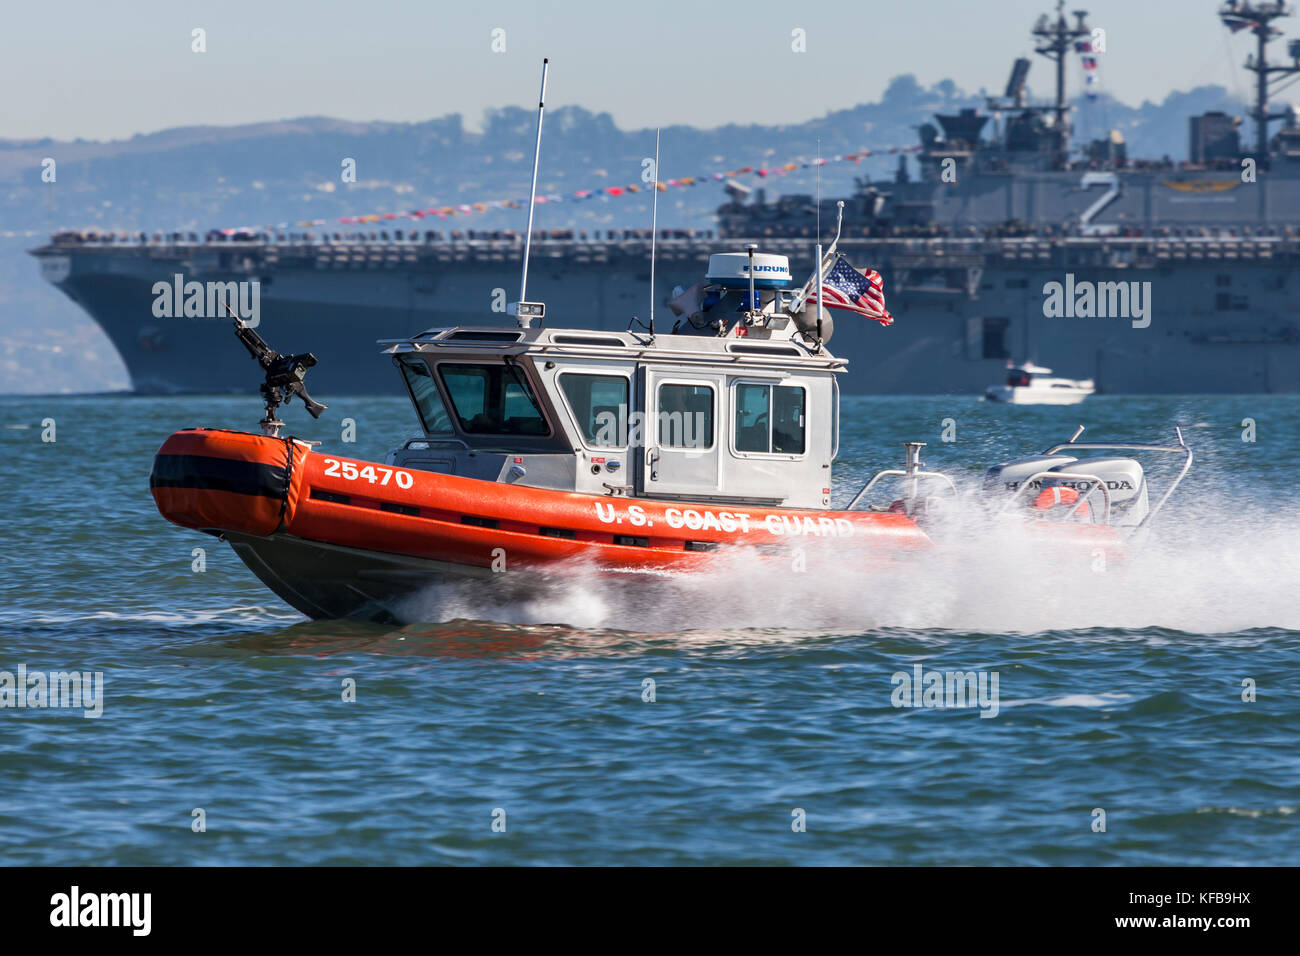 Une Garde côtière TDDSM dans une classe Defender-voile, bateau d'intervention aka - Small (RB-S), en route vers leur position de patrouille sur la baie de San Francisco au cours de la flotte 2017 Banque D'Images